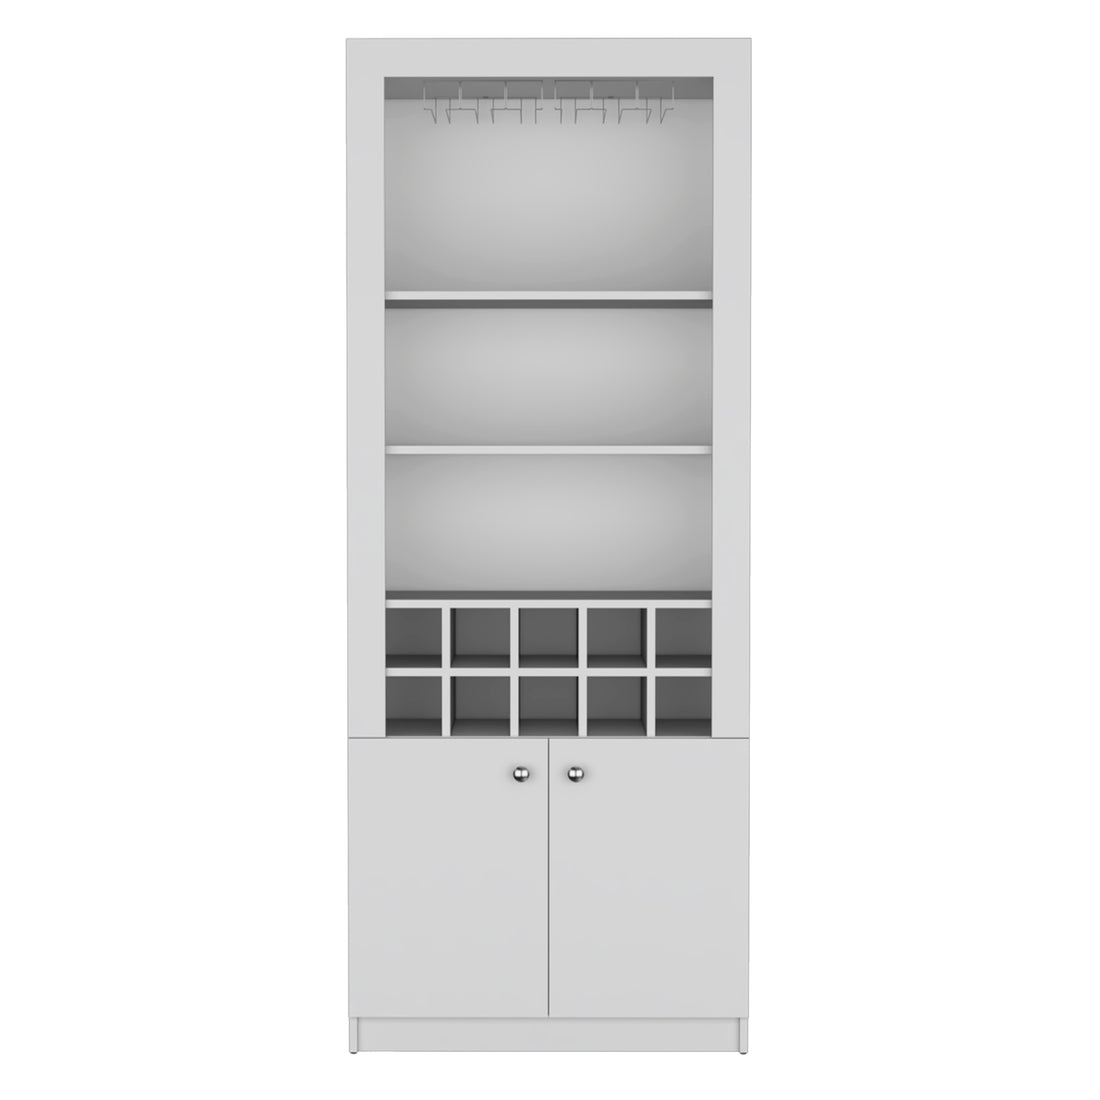 Nero 74 Inch Tall Bar Cabinet 4 Tier Modern Bar -